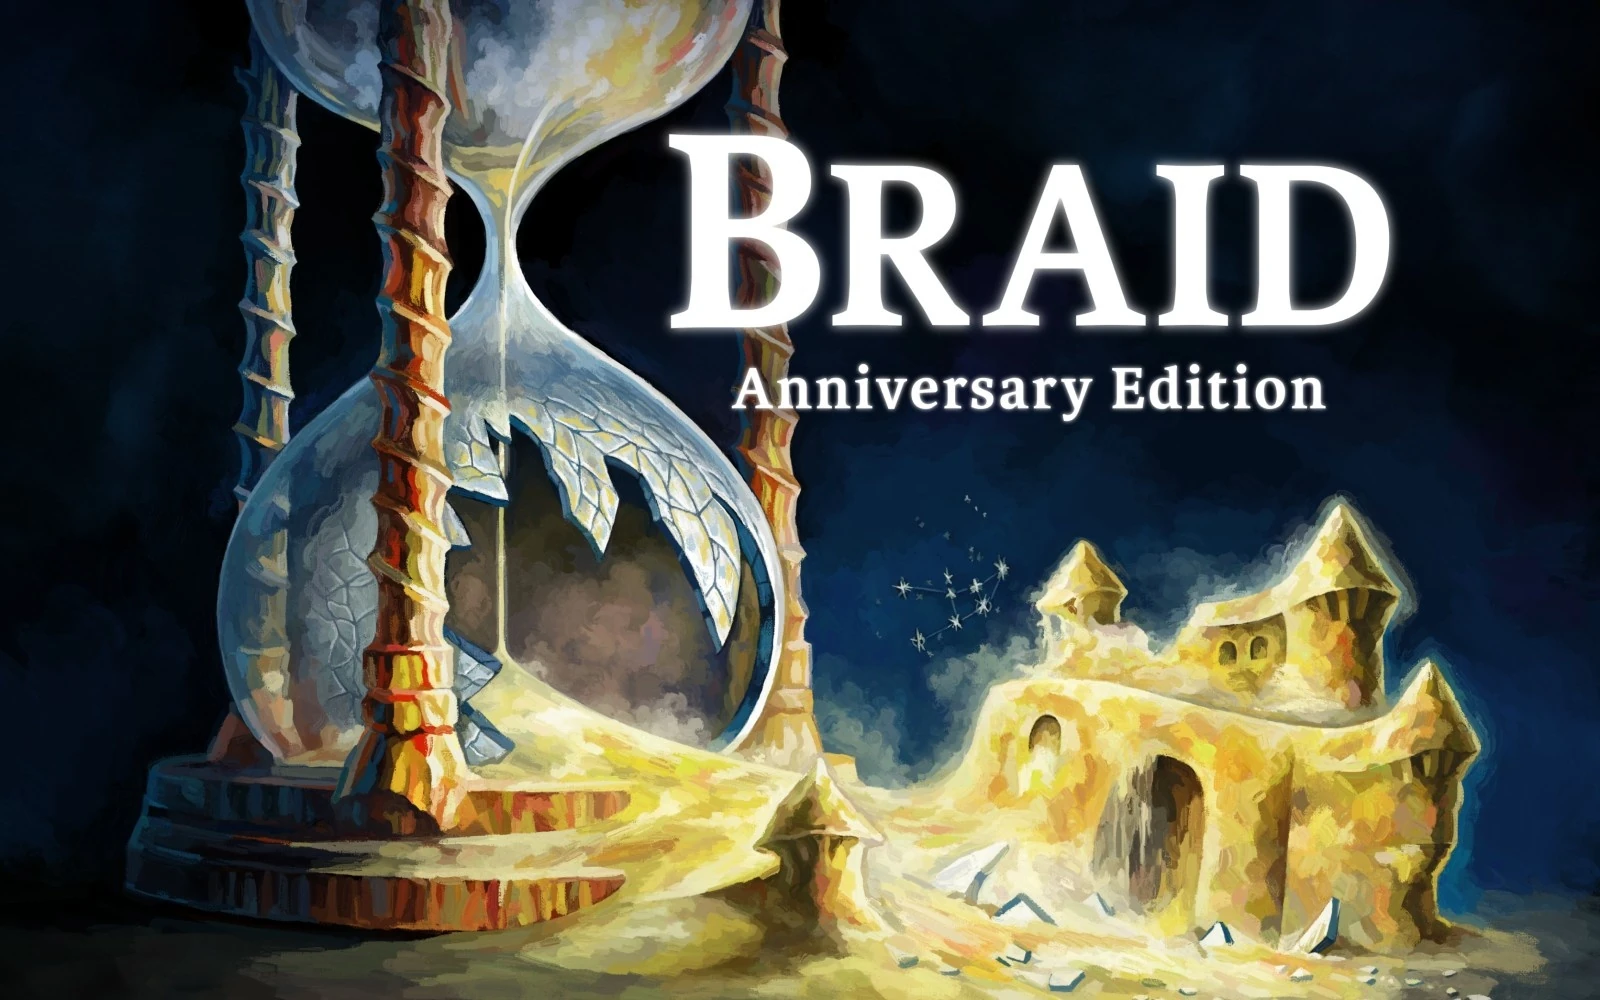 Braid: Anniversary Edition kommer att innehålla 35 nya nivåer, - säger skaparen